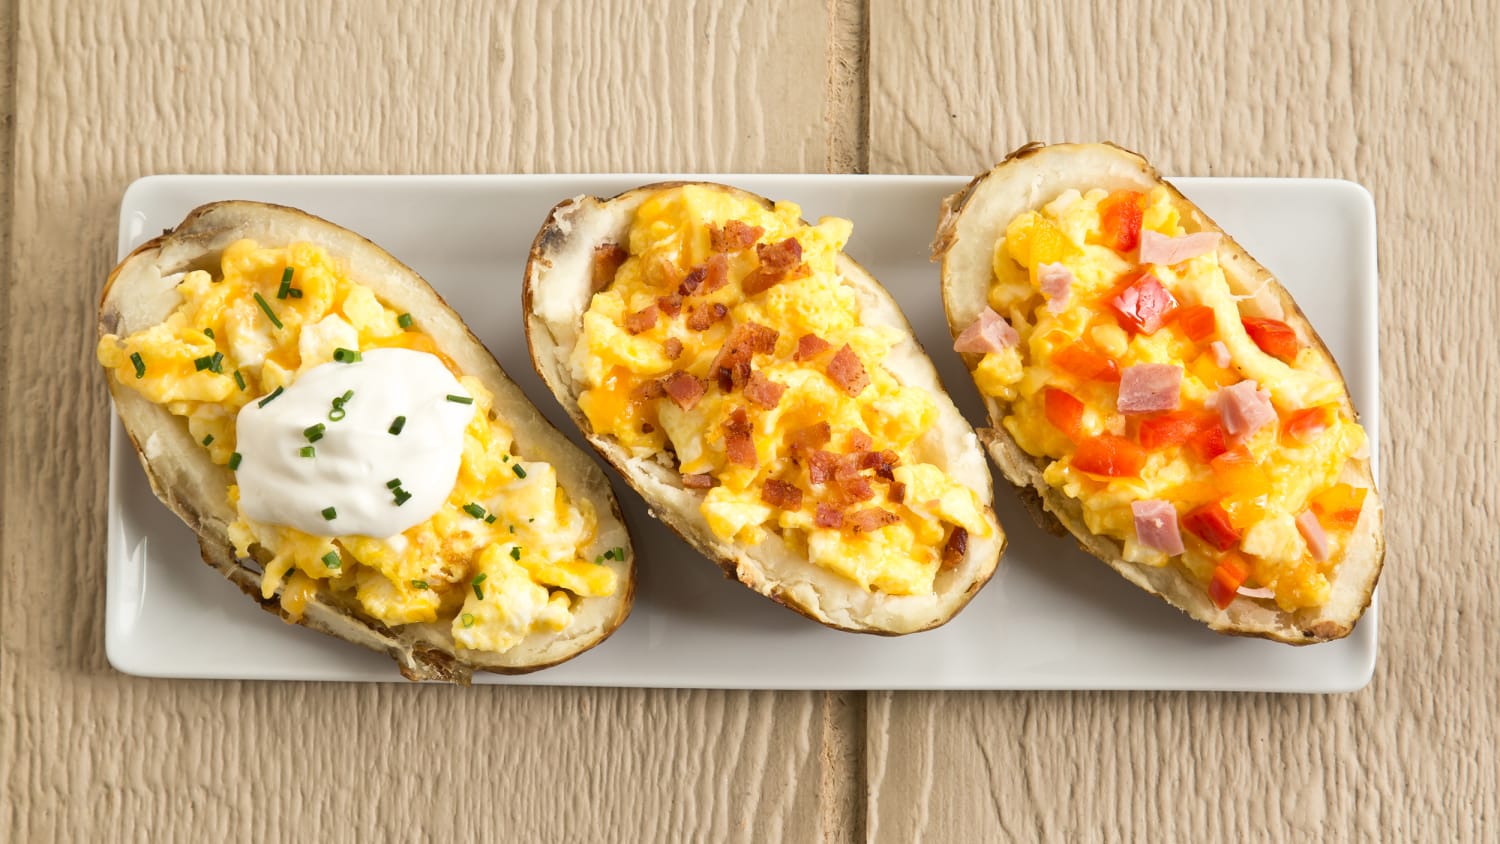 Breakfast Baked Potato Boats Stuffed with Cheesy Eggs - TODAY.com